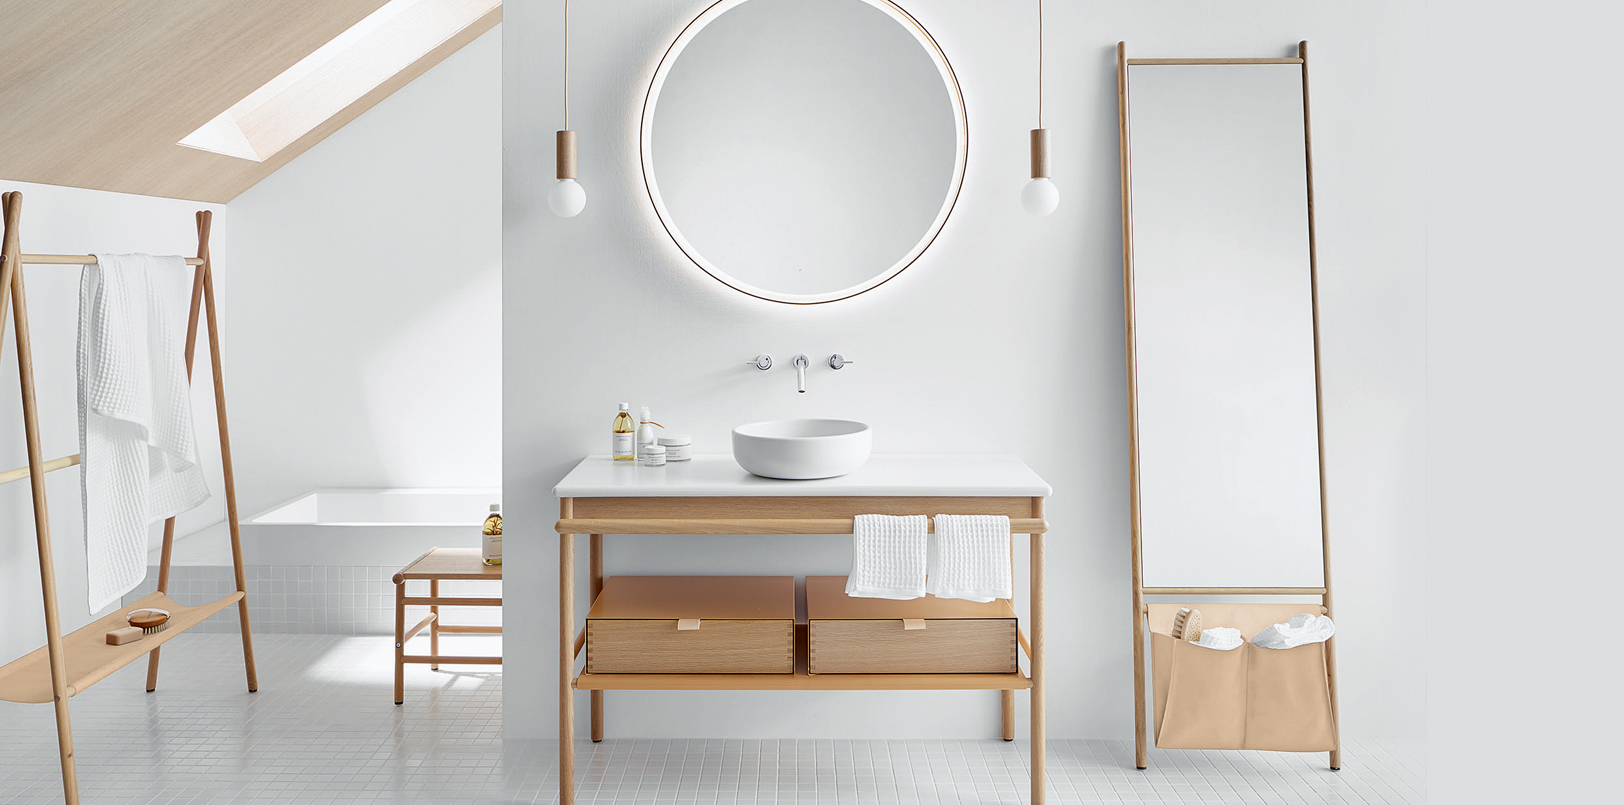 Handtuchleiter, Waschtisch und Spiegel aus Holz in hellem Bad mit Dachschräge